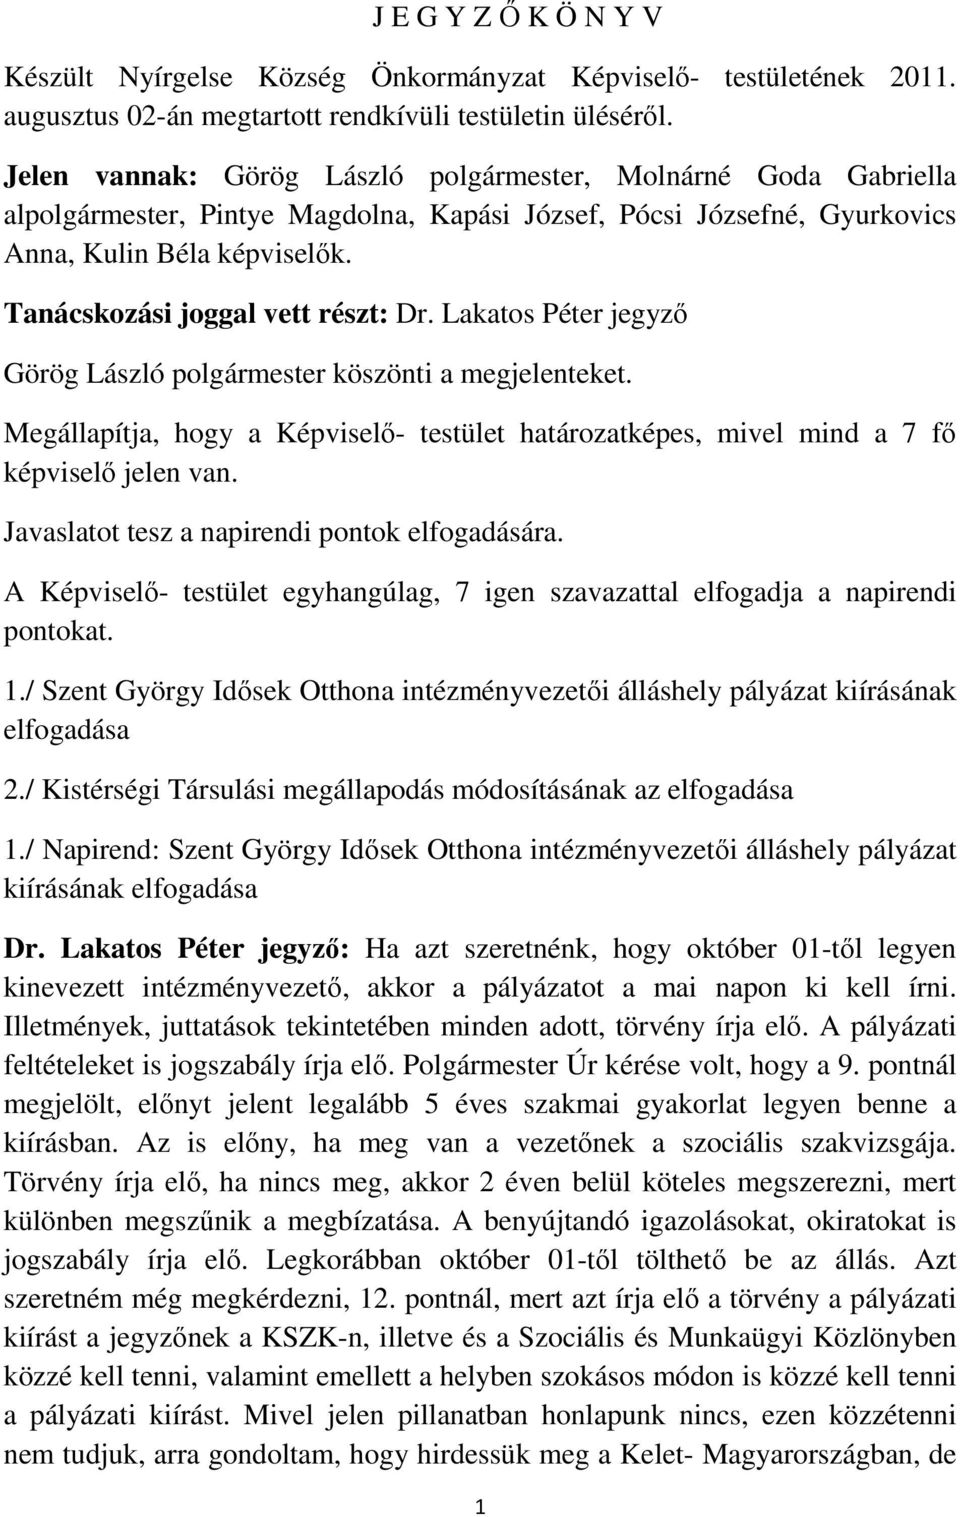 Tanácskozási joggal vett részt: Dr. Lakatos Péter jegyző Görög László polgármester köszönti a megjelenteket.